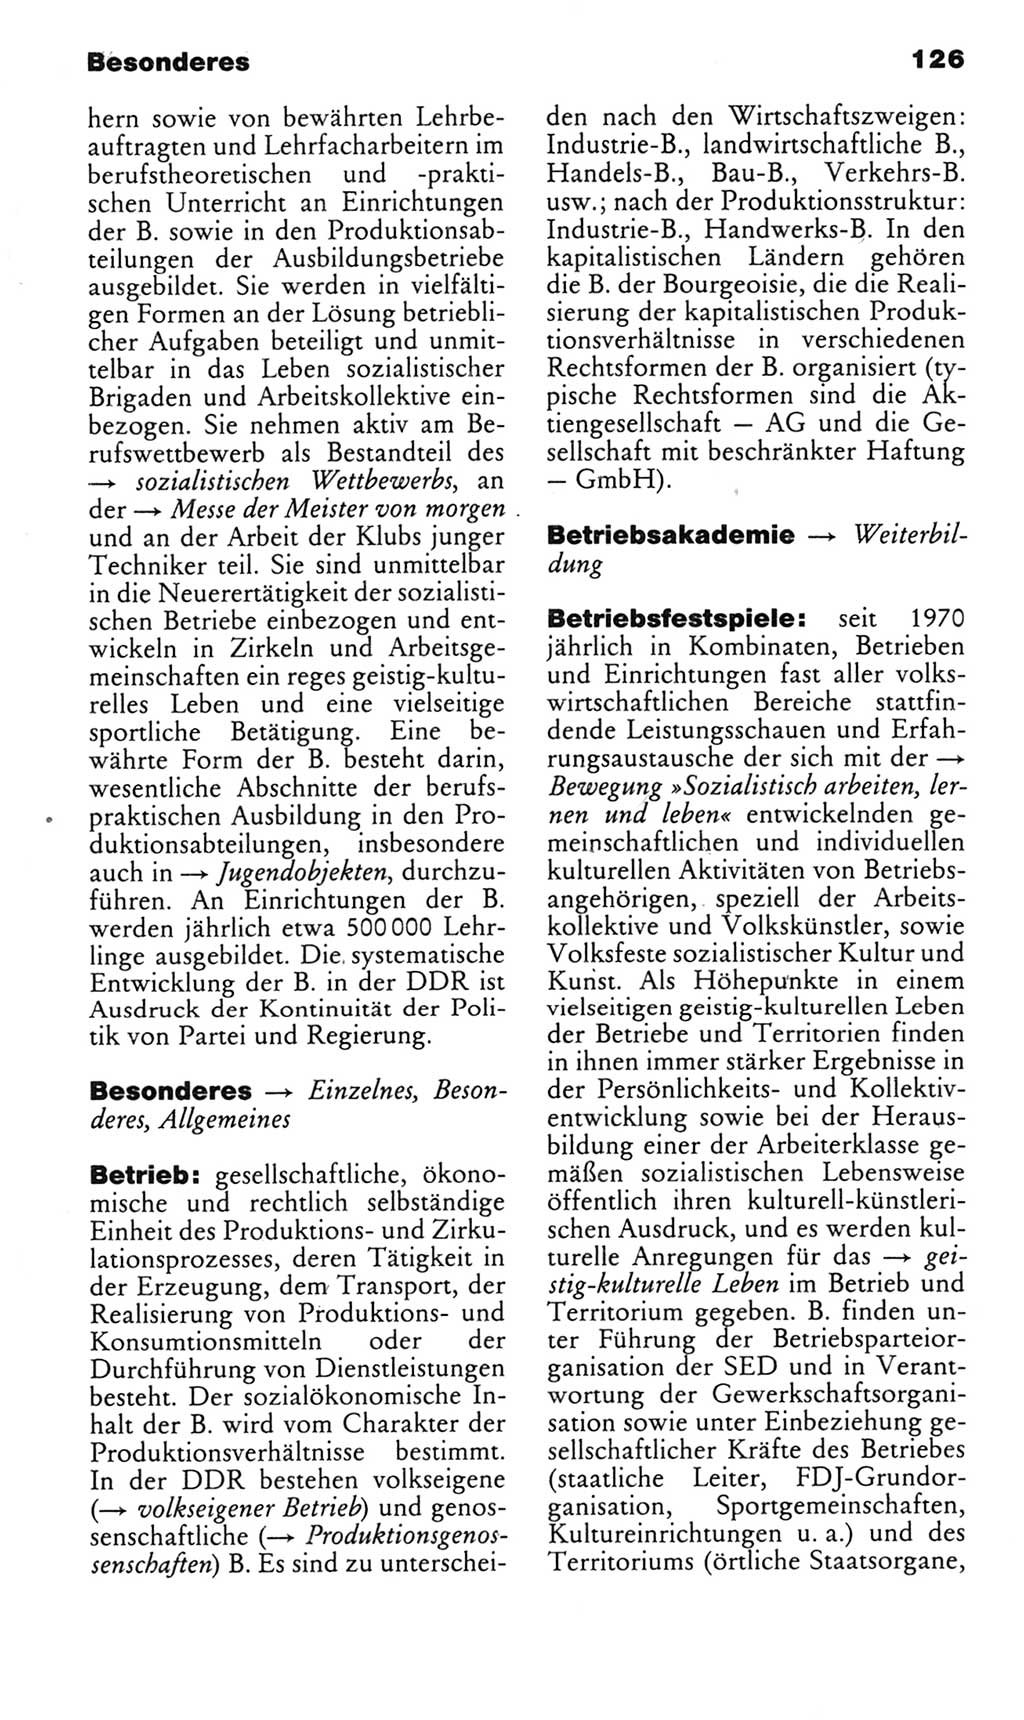 Kleines politisches Wörterbuch [Deutsche Demokratische Republik (DDR)] 1983, Seite 126 (Kl. pol. Wb. DDR 1983, S. 126)